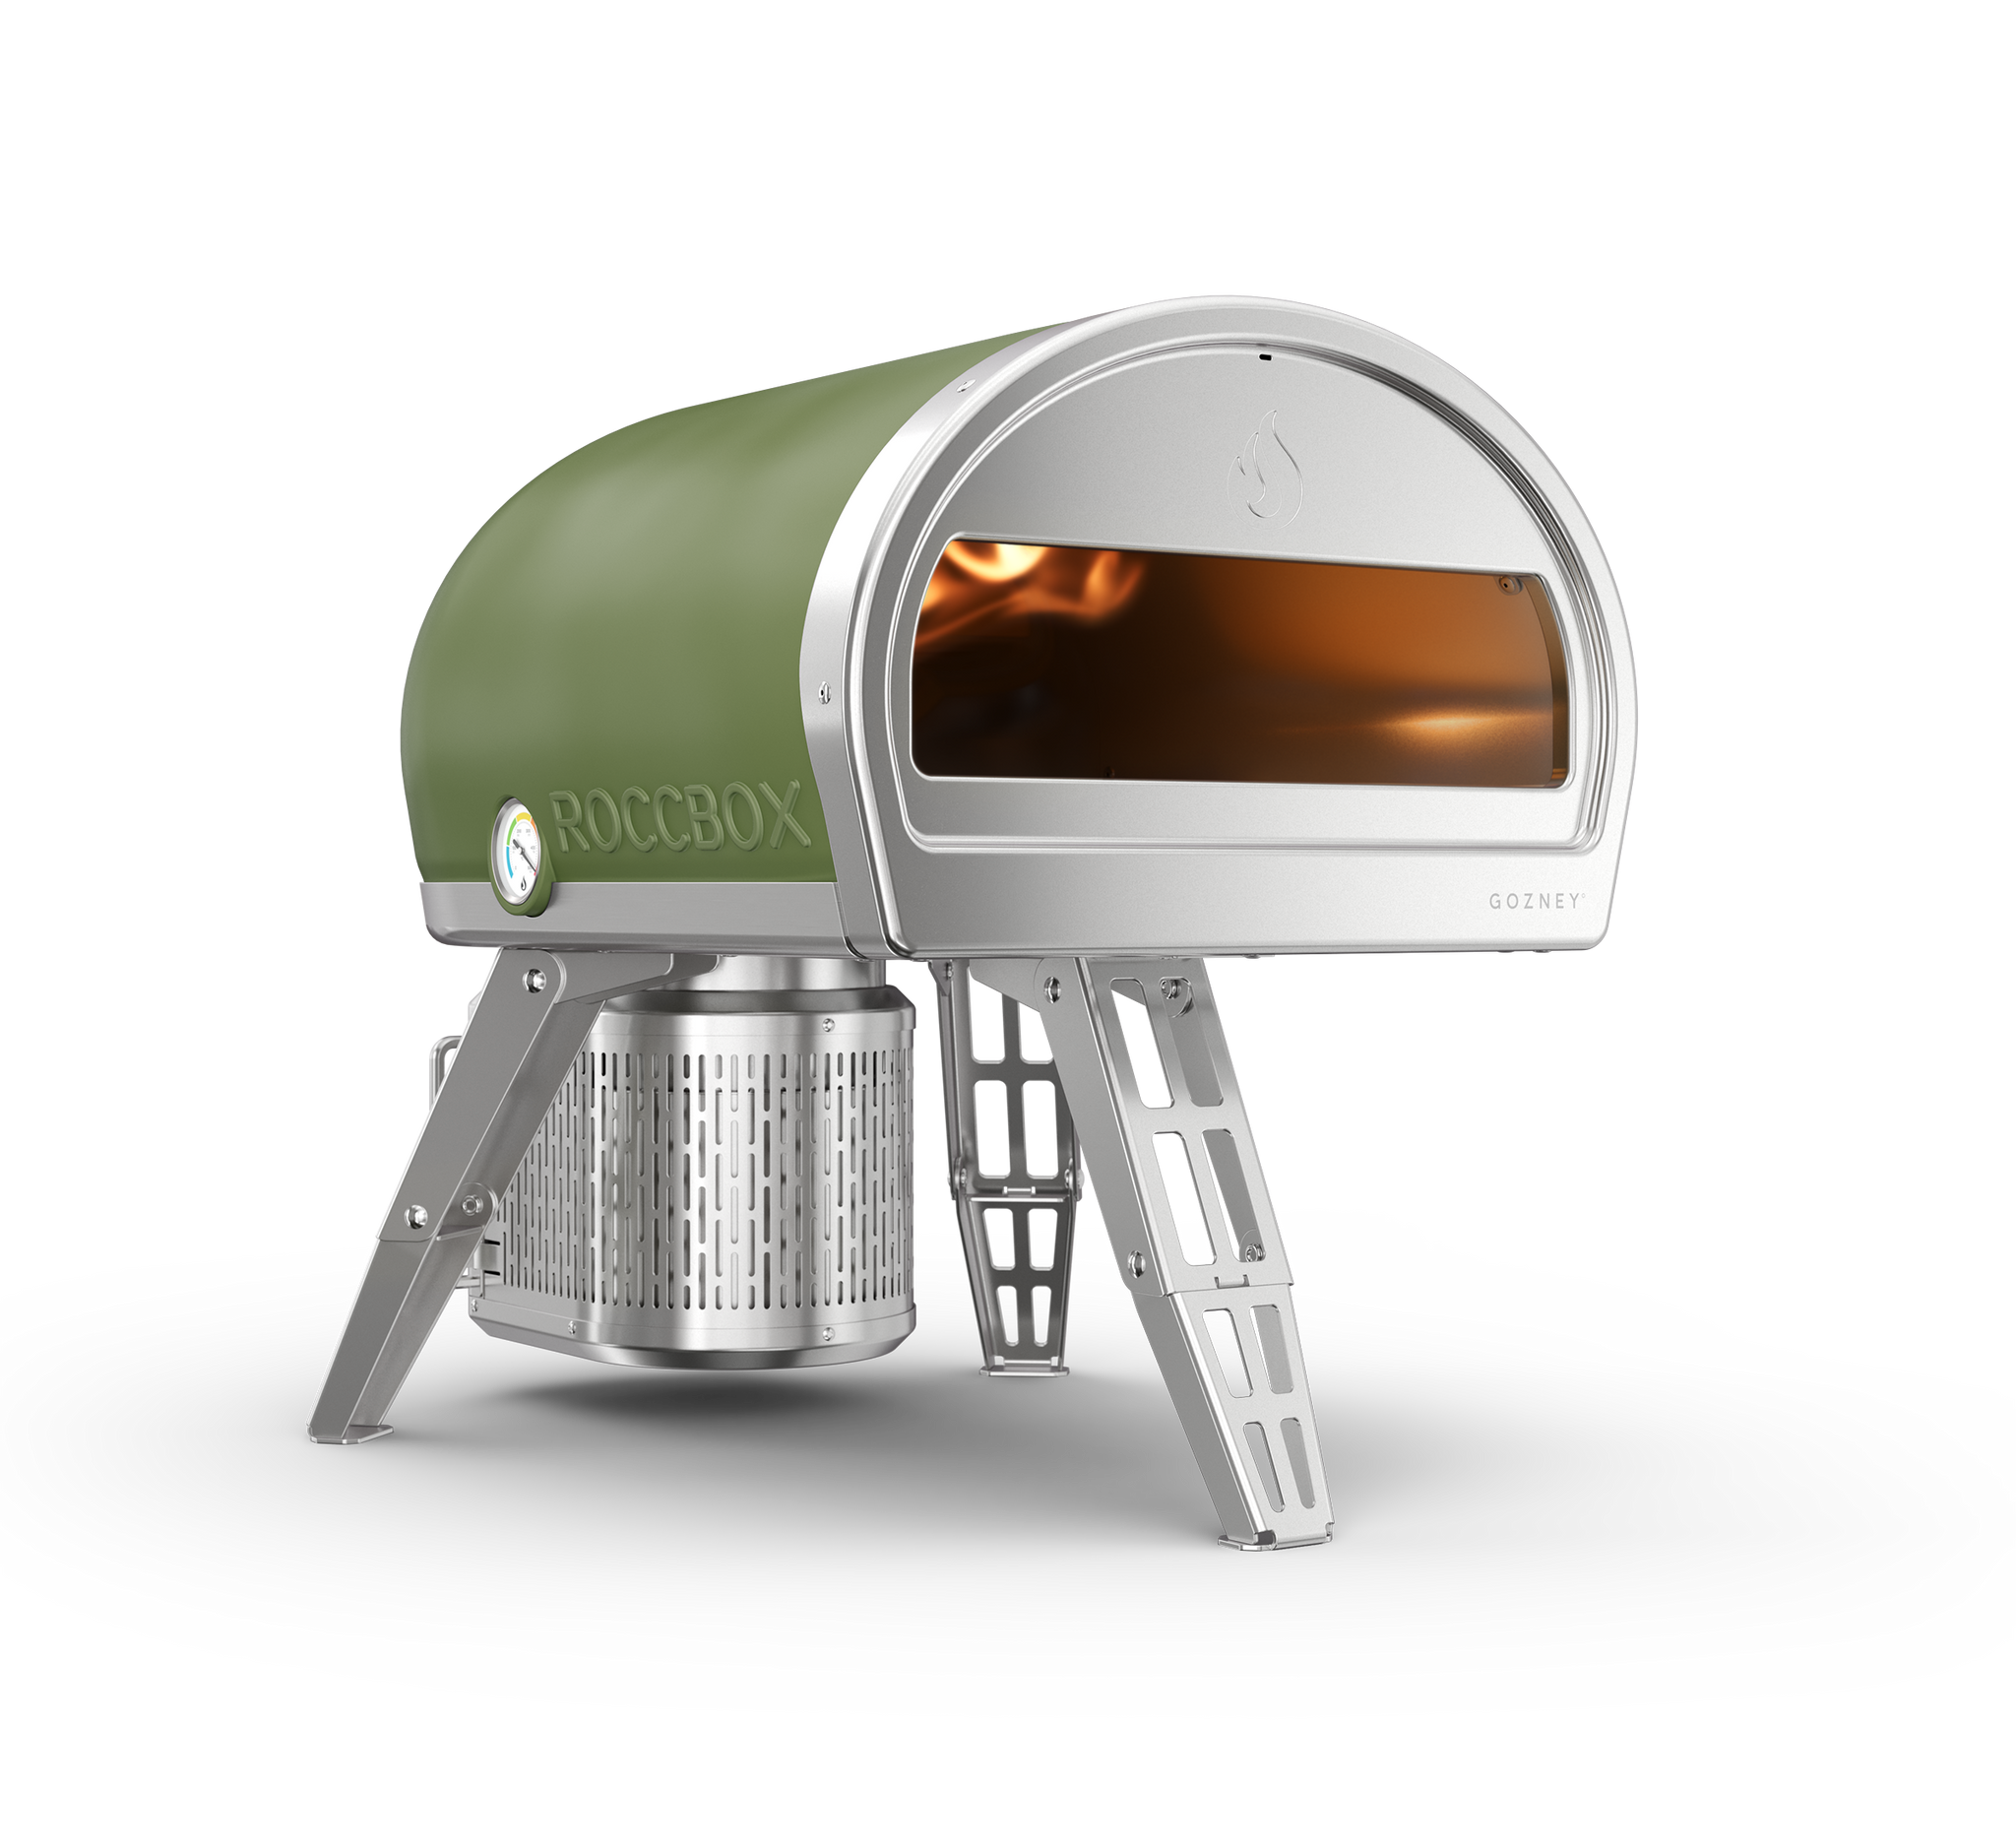 Roccbox - pizza oven - portable pizza oven - Gozney